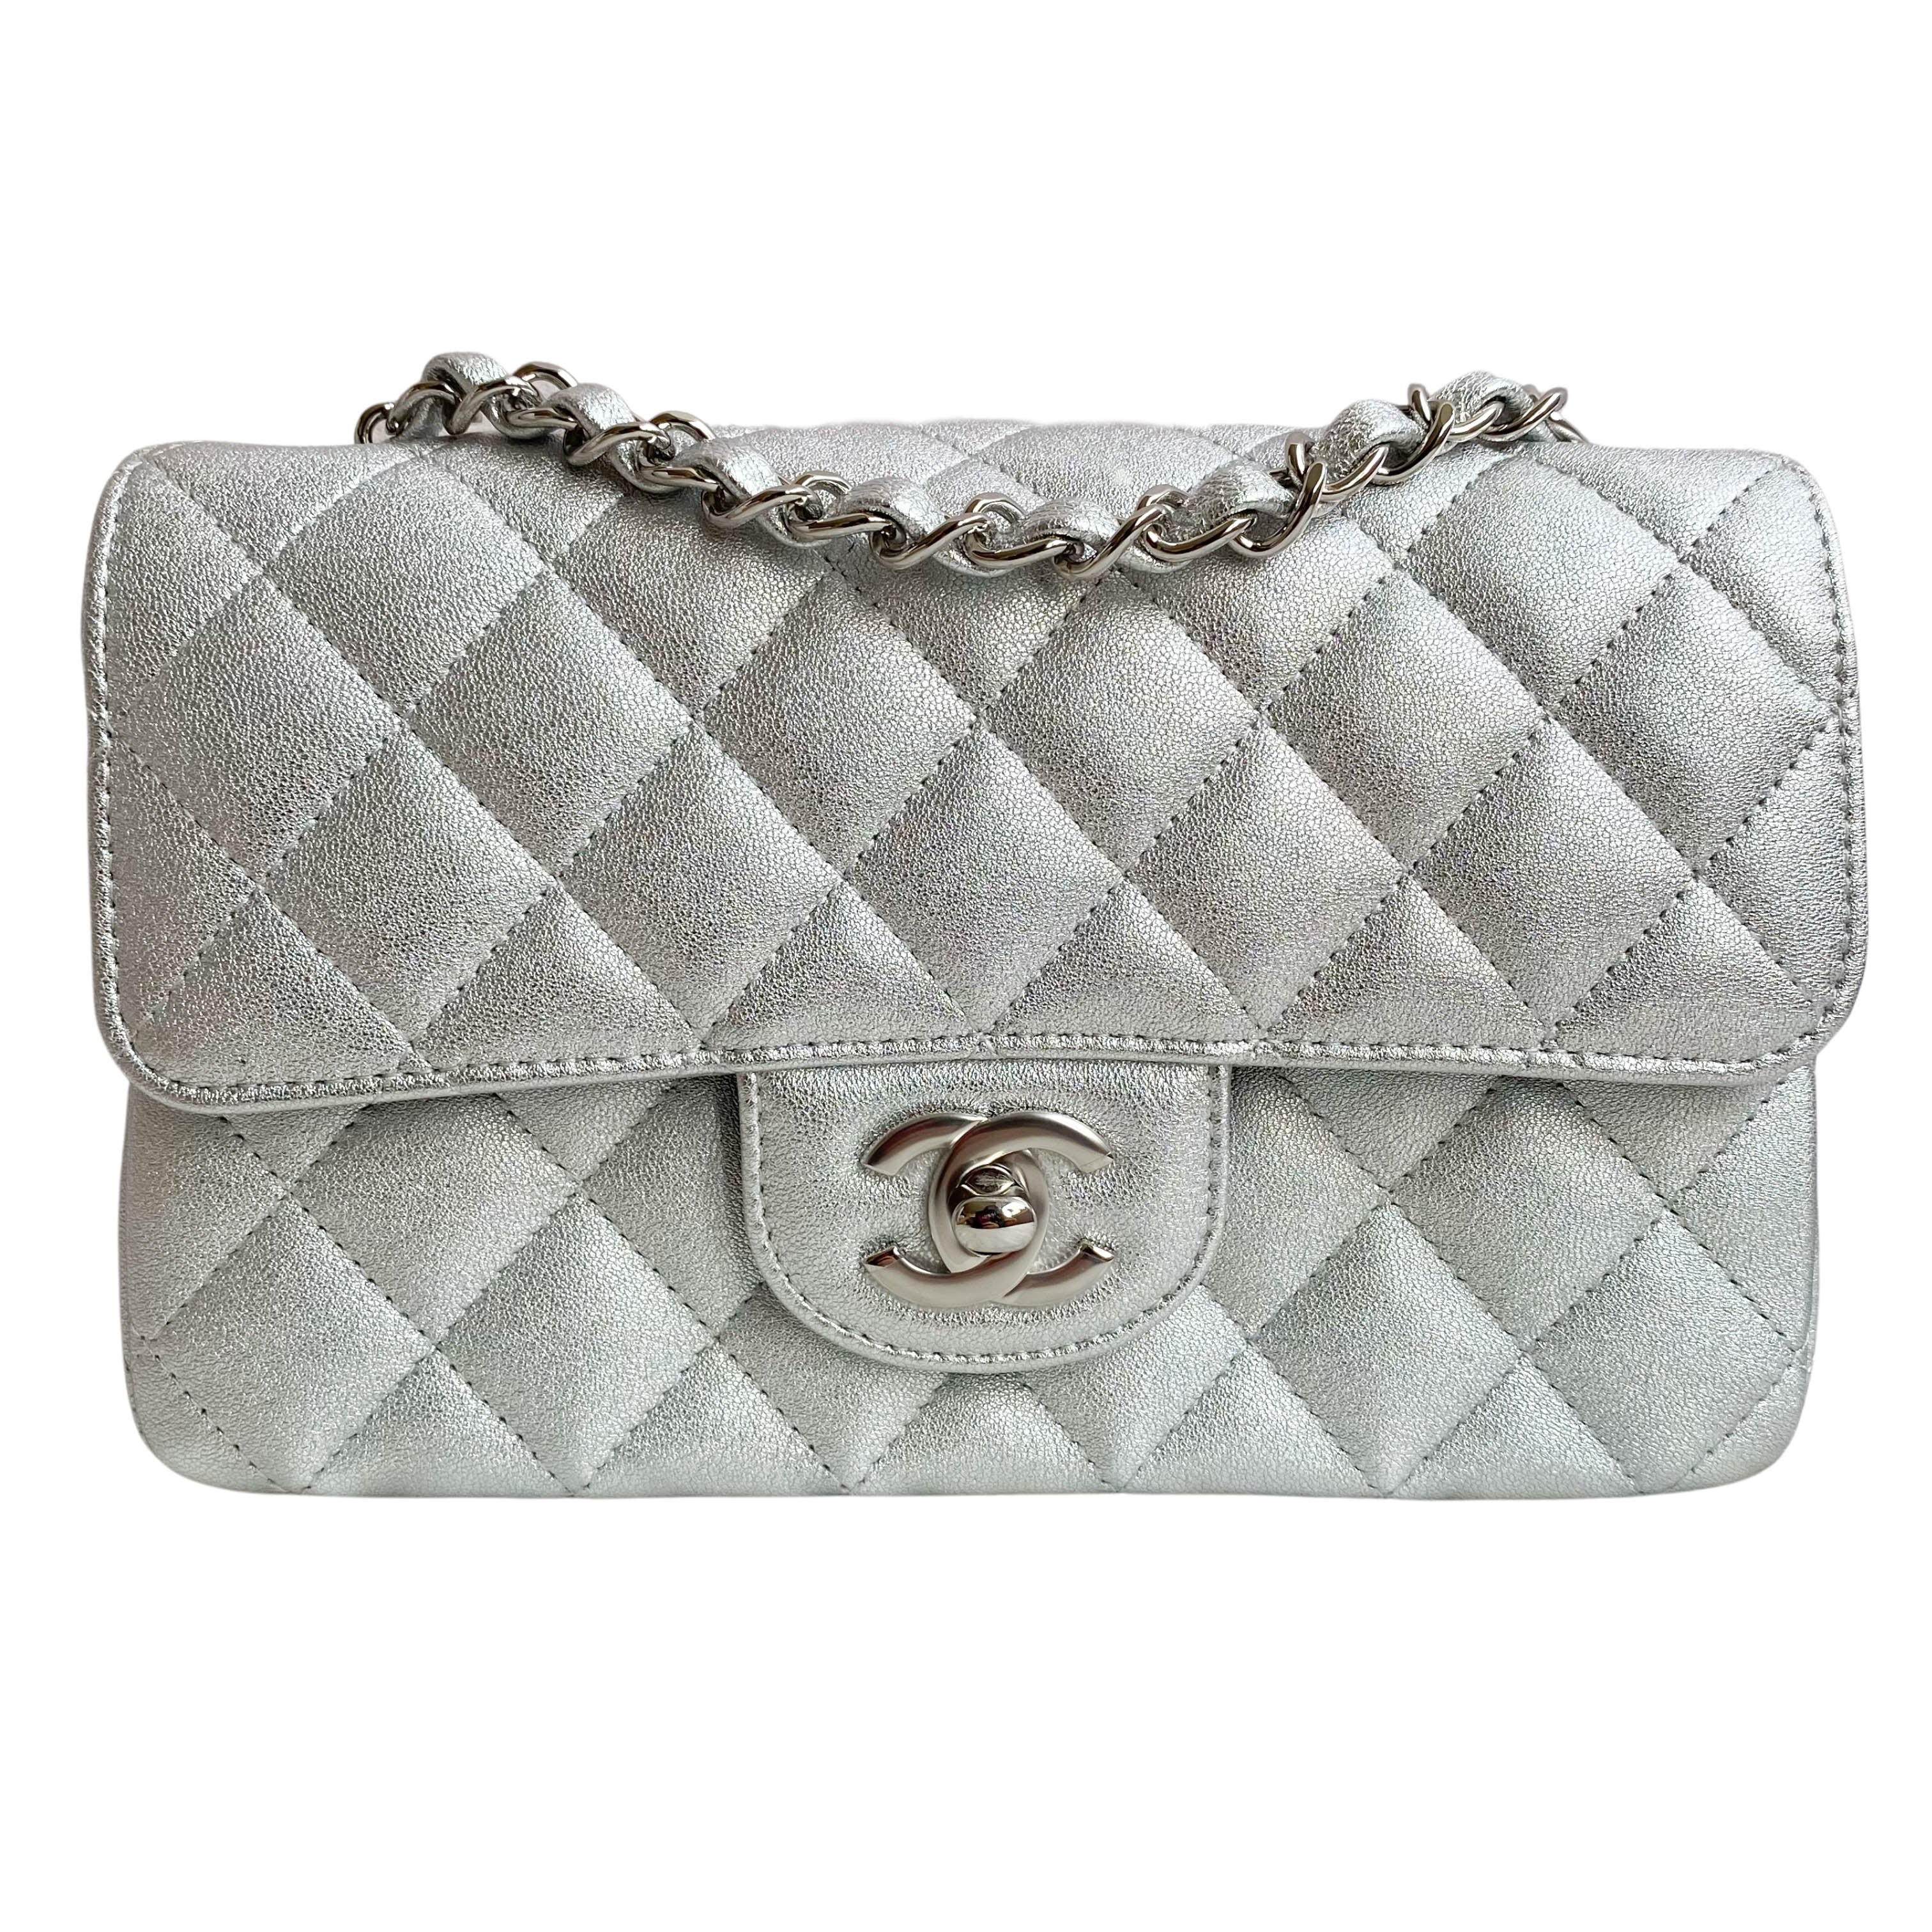 Chanel Mini Silver Caviar - Brand New!